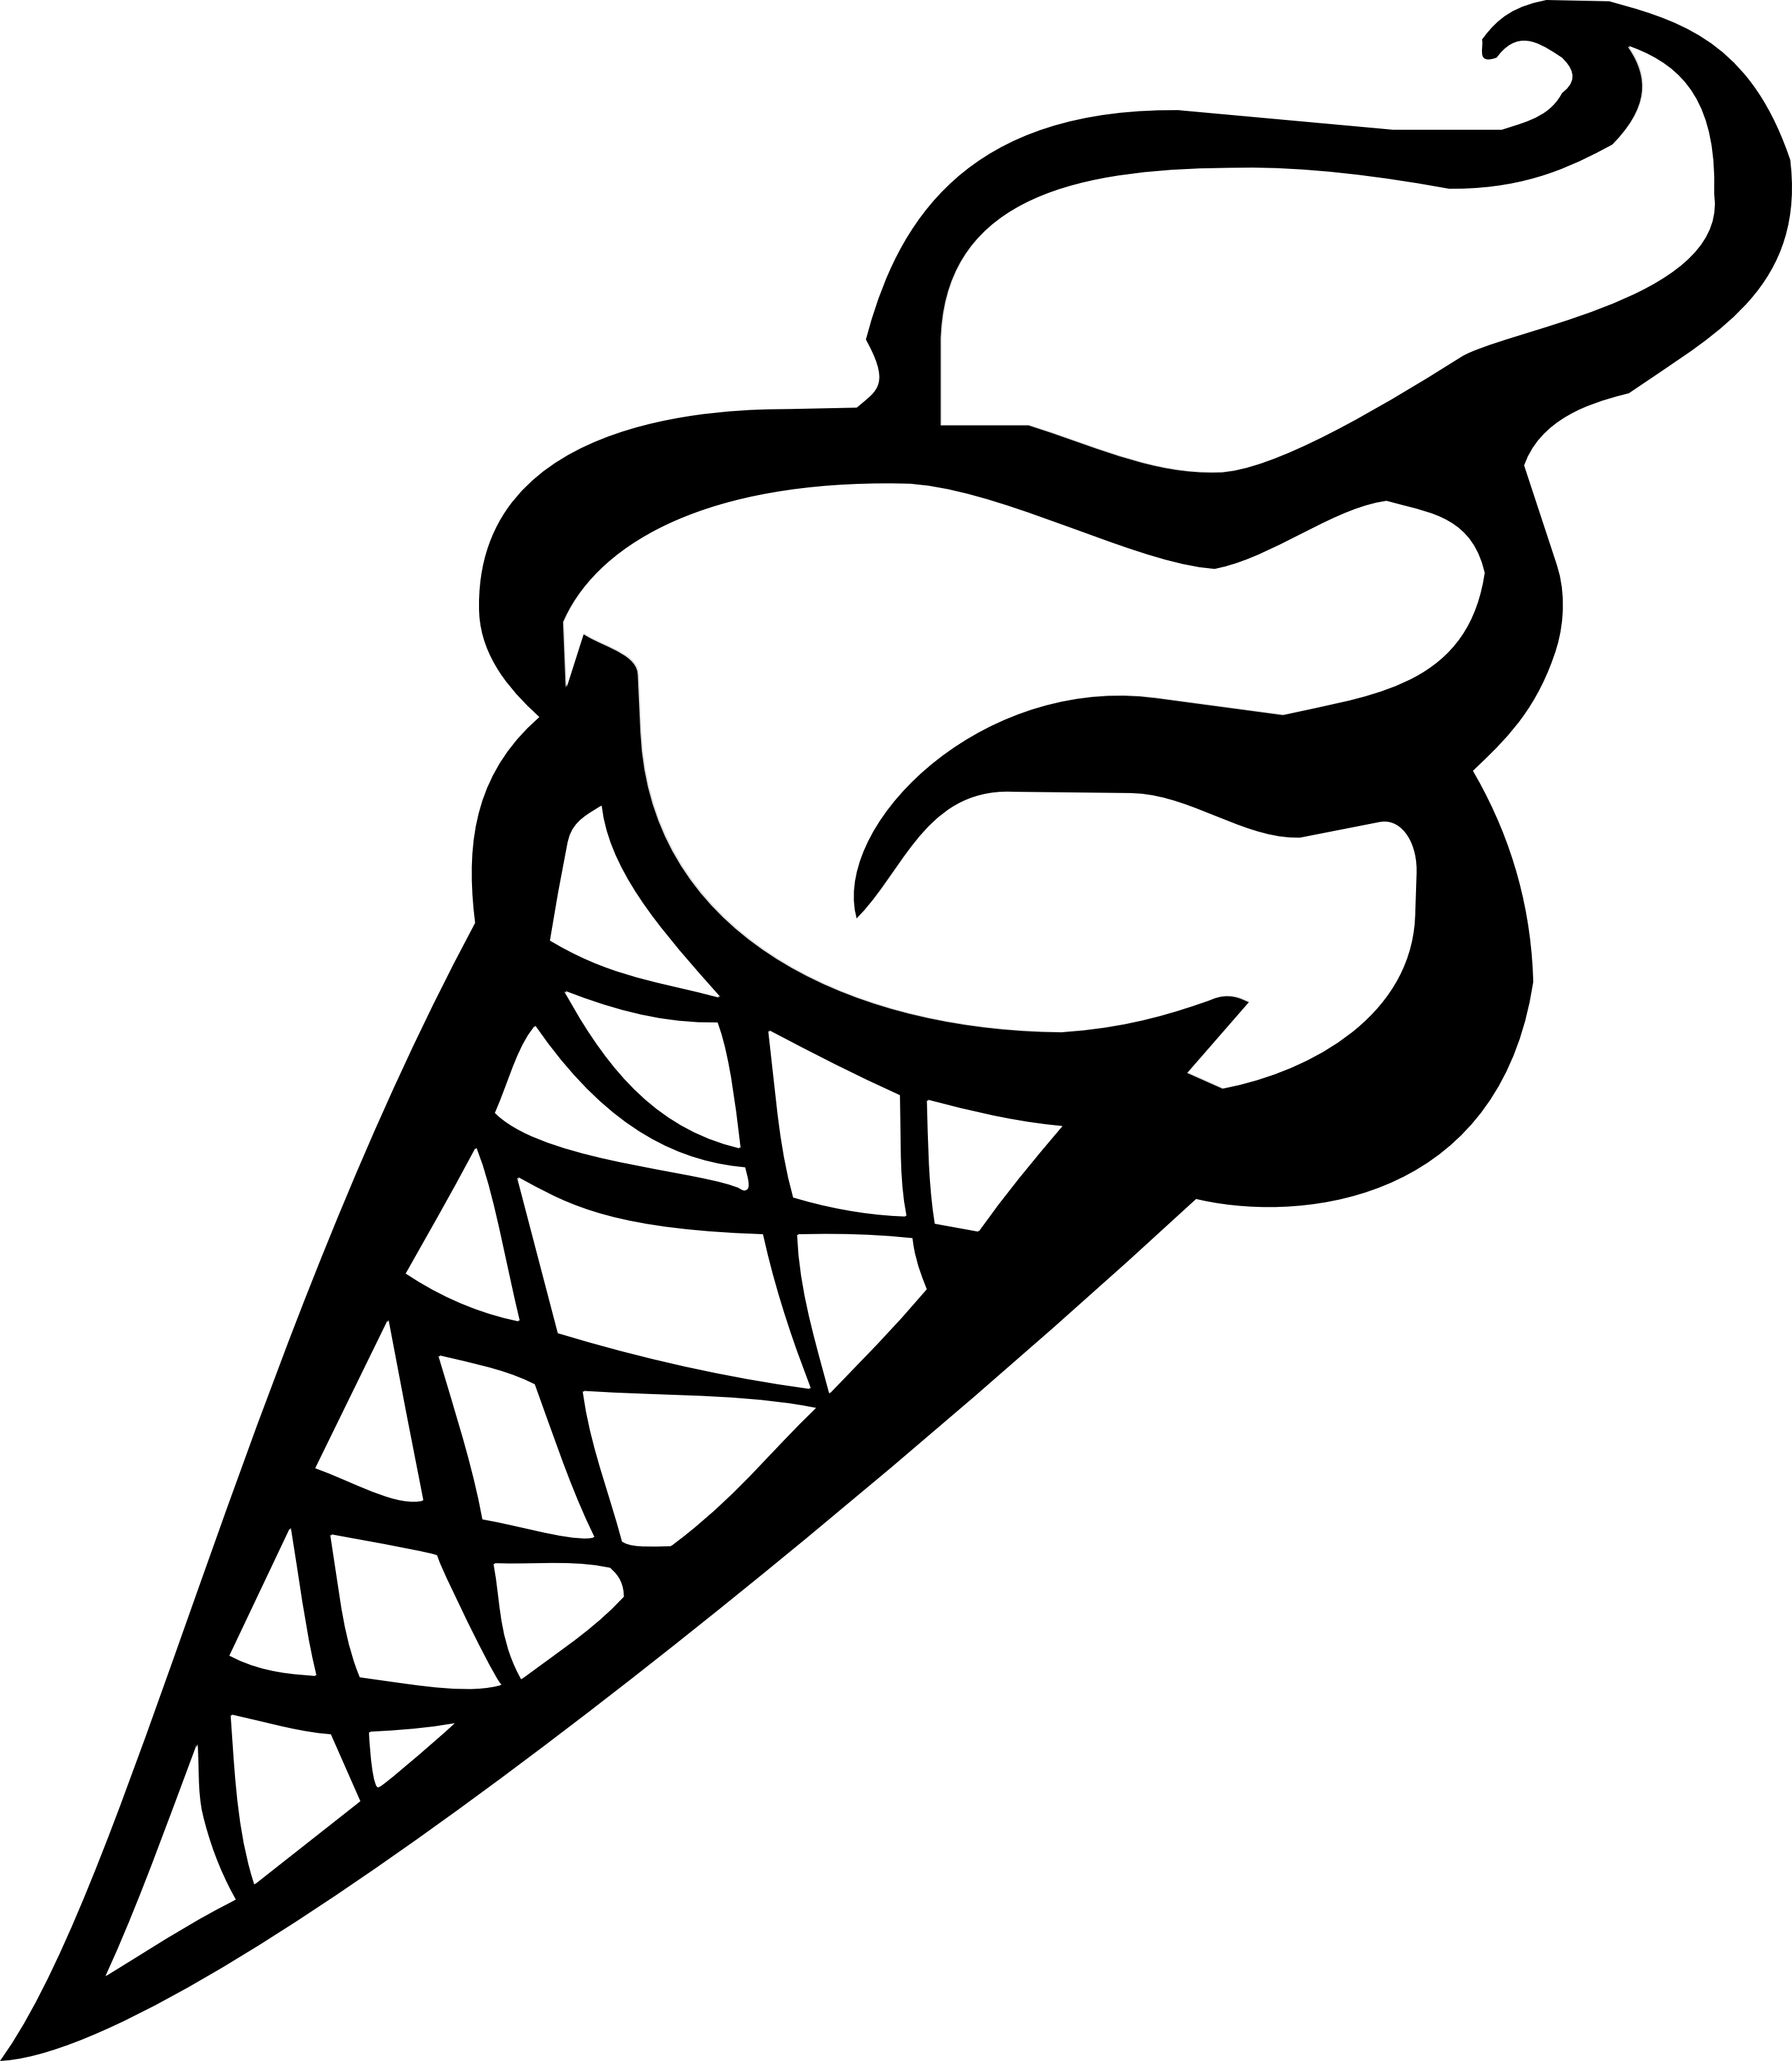 ice cream cone clipart black and white - photo #7